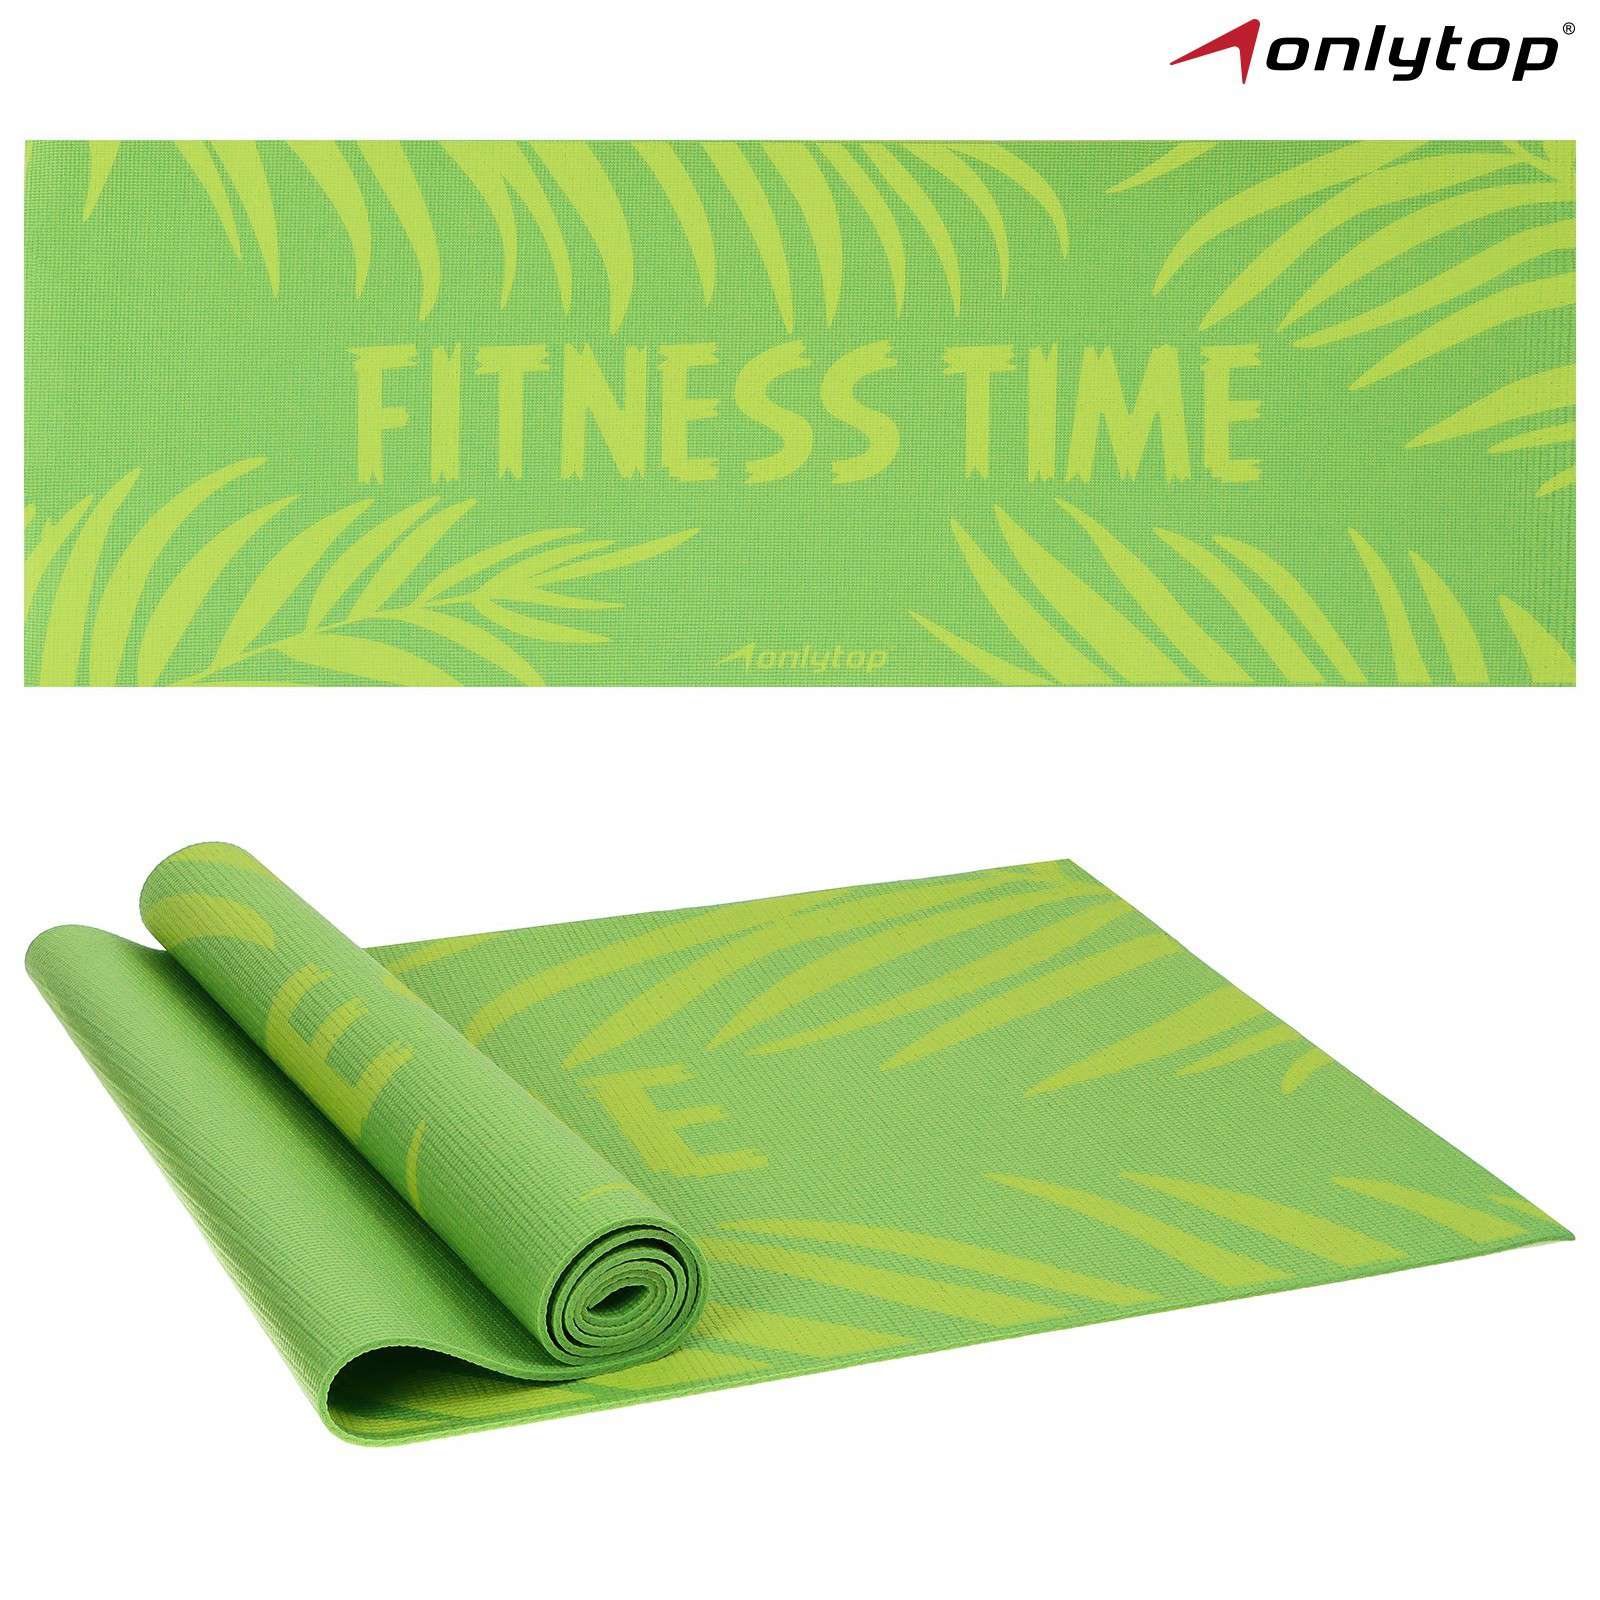 Коврик для фитнеса 7387391 Fitness time 173*61*0,4см цвет зелёный - Бугульма 